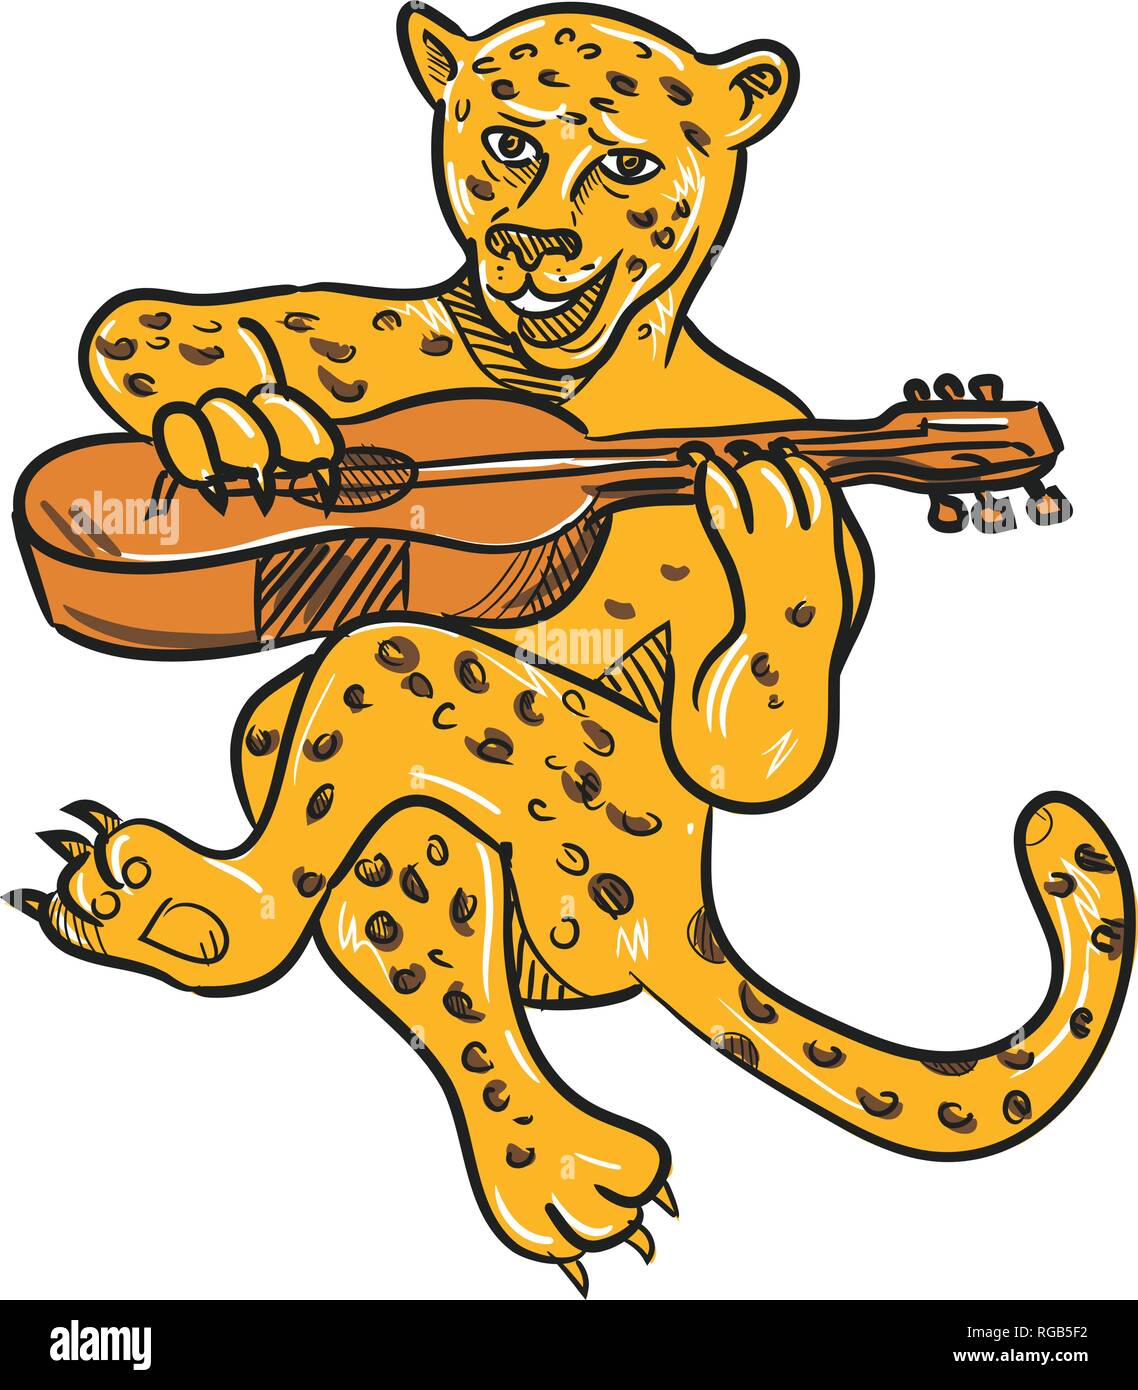 Lo stile del fumetto illustrazione di un felice jaguar o leopard suonando una chitarra acustica mentre è seduto o seduto realizzato a pieno colore su b isolate Illustrazione Vettoriale